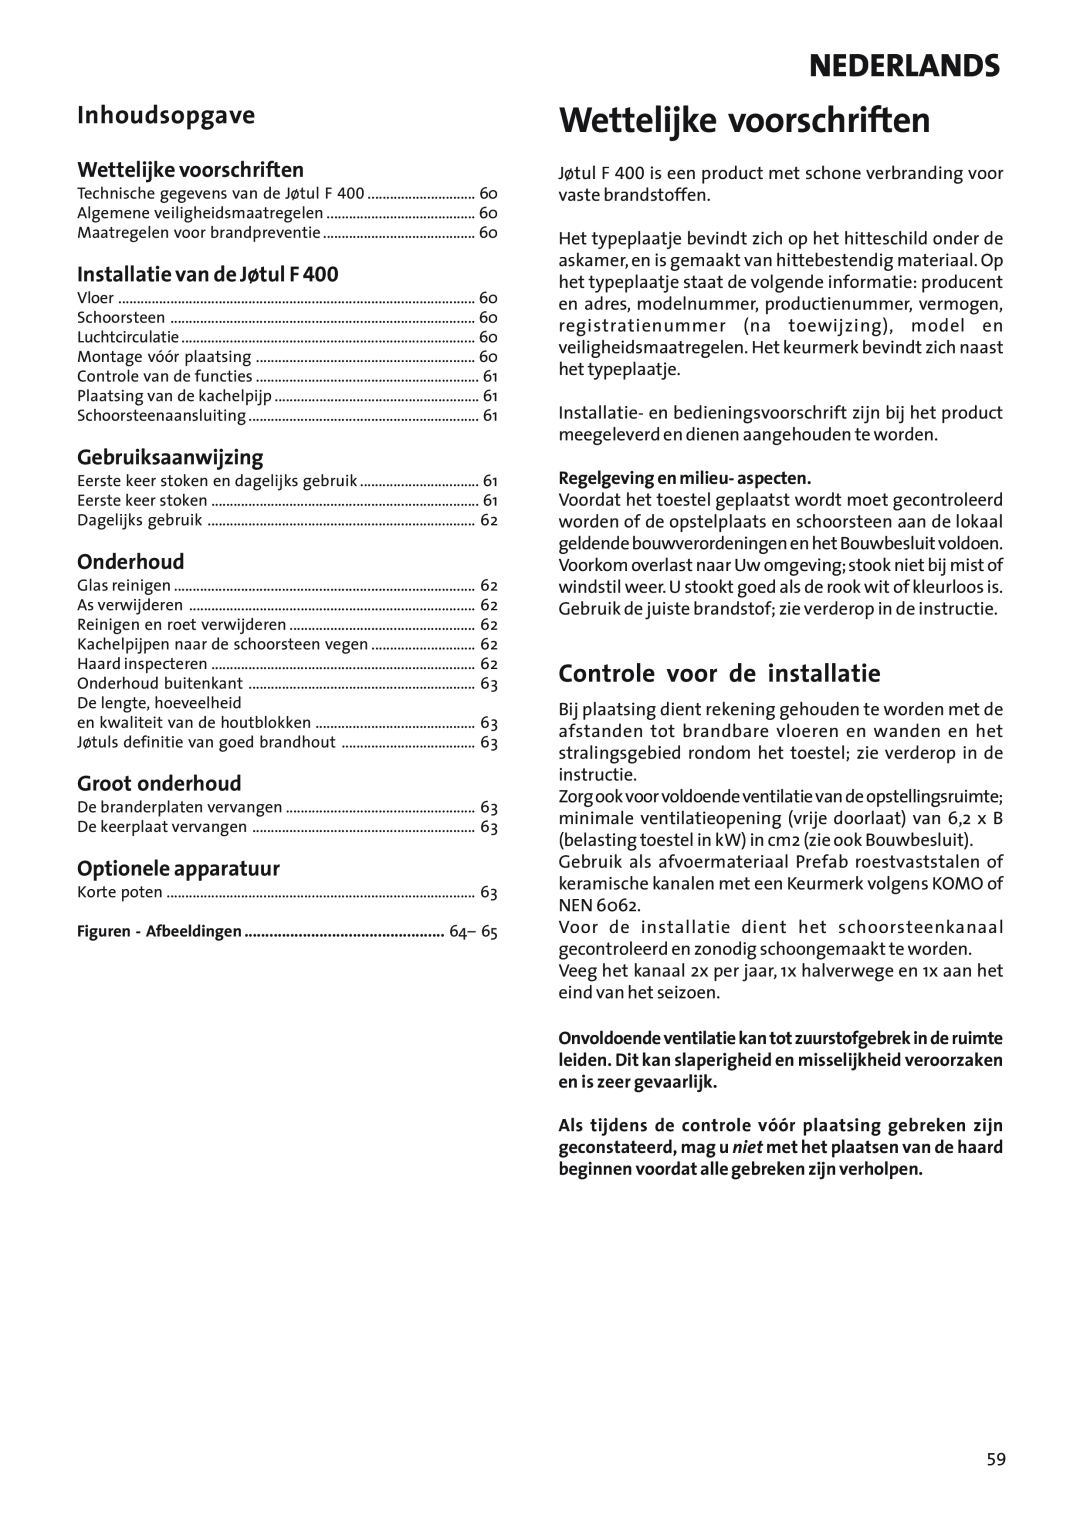 Jotul Woodstove F 400 manual Wettelijke voorschriften, Nederlands, Inhoudsopgave, Controle voor de installatie, Onderhoud 